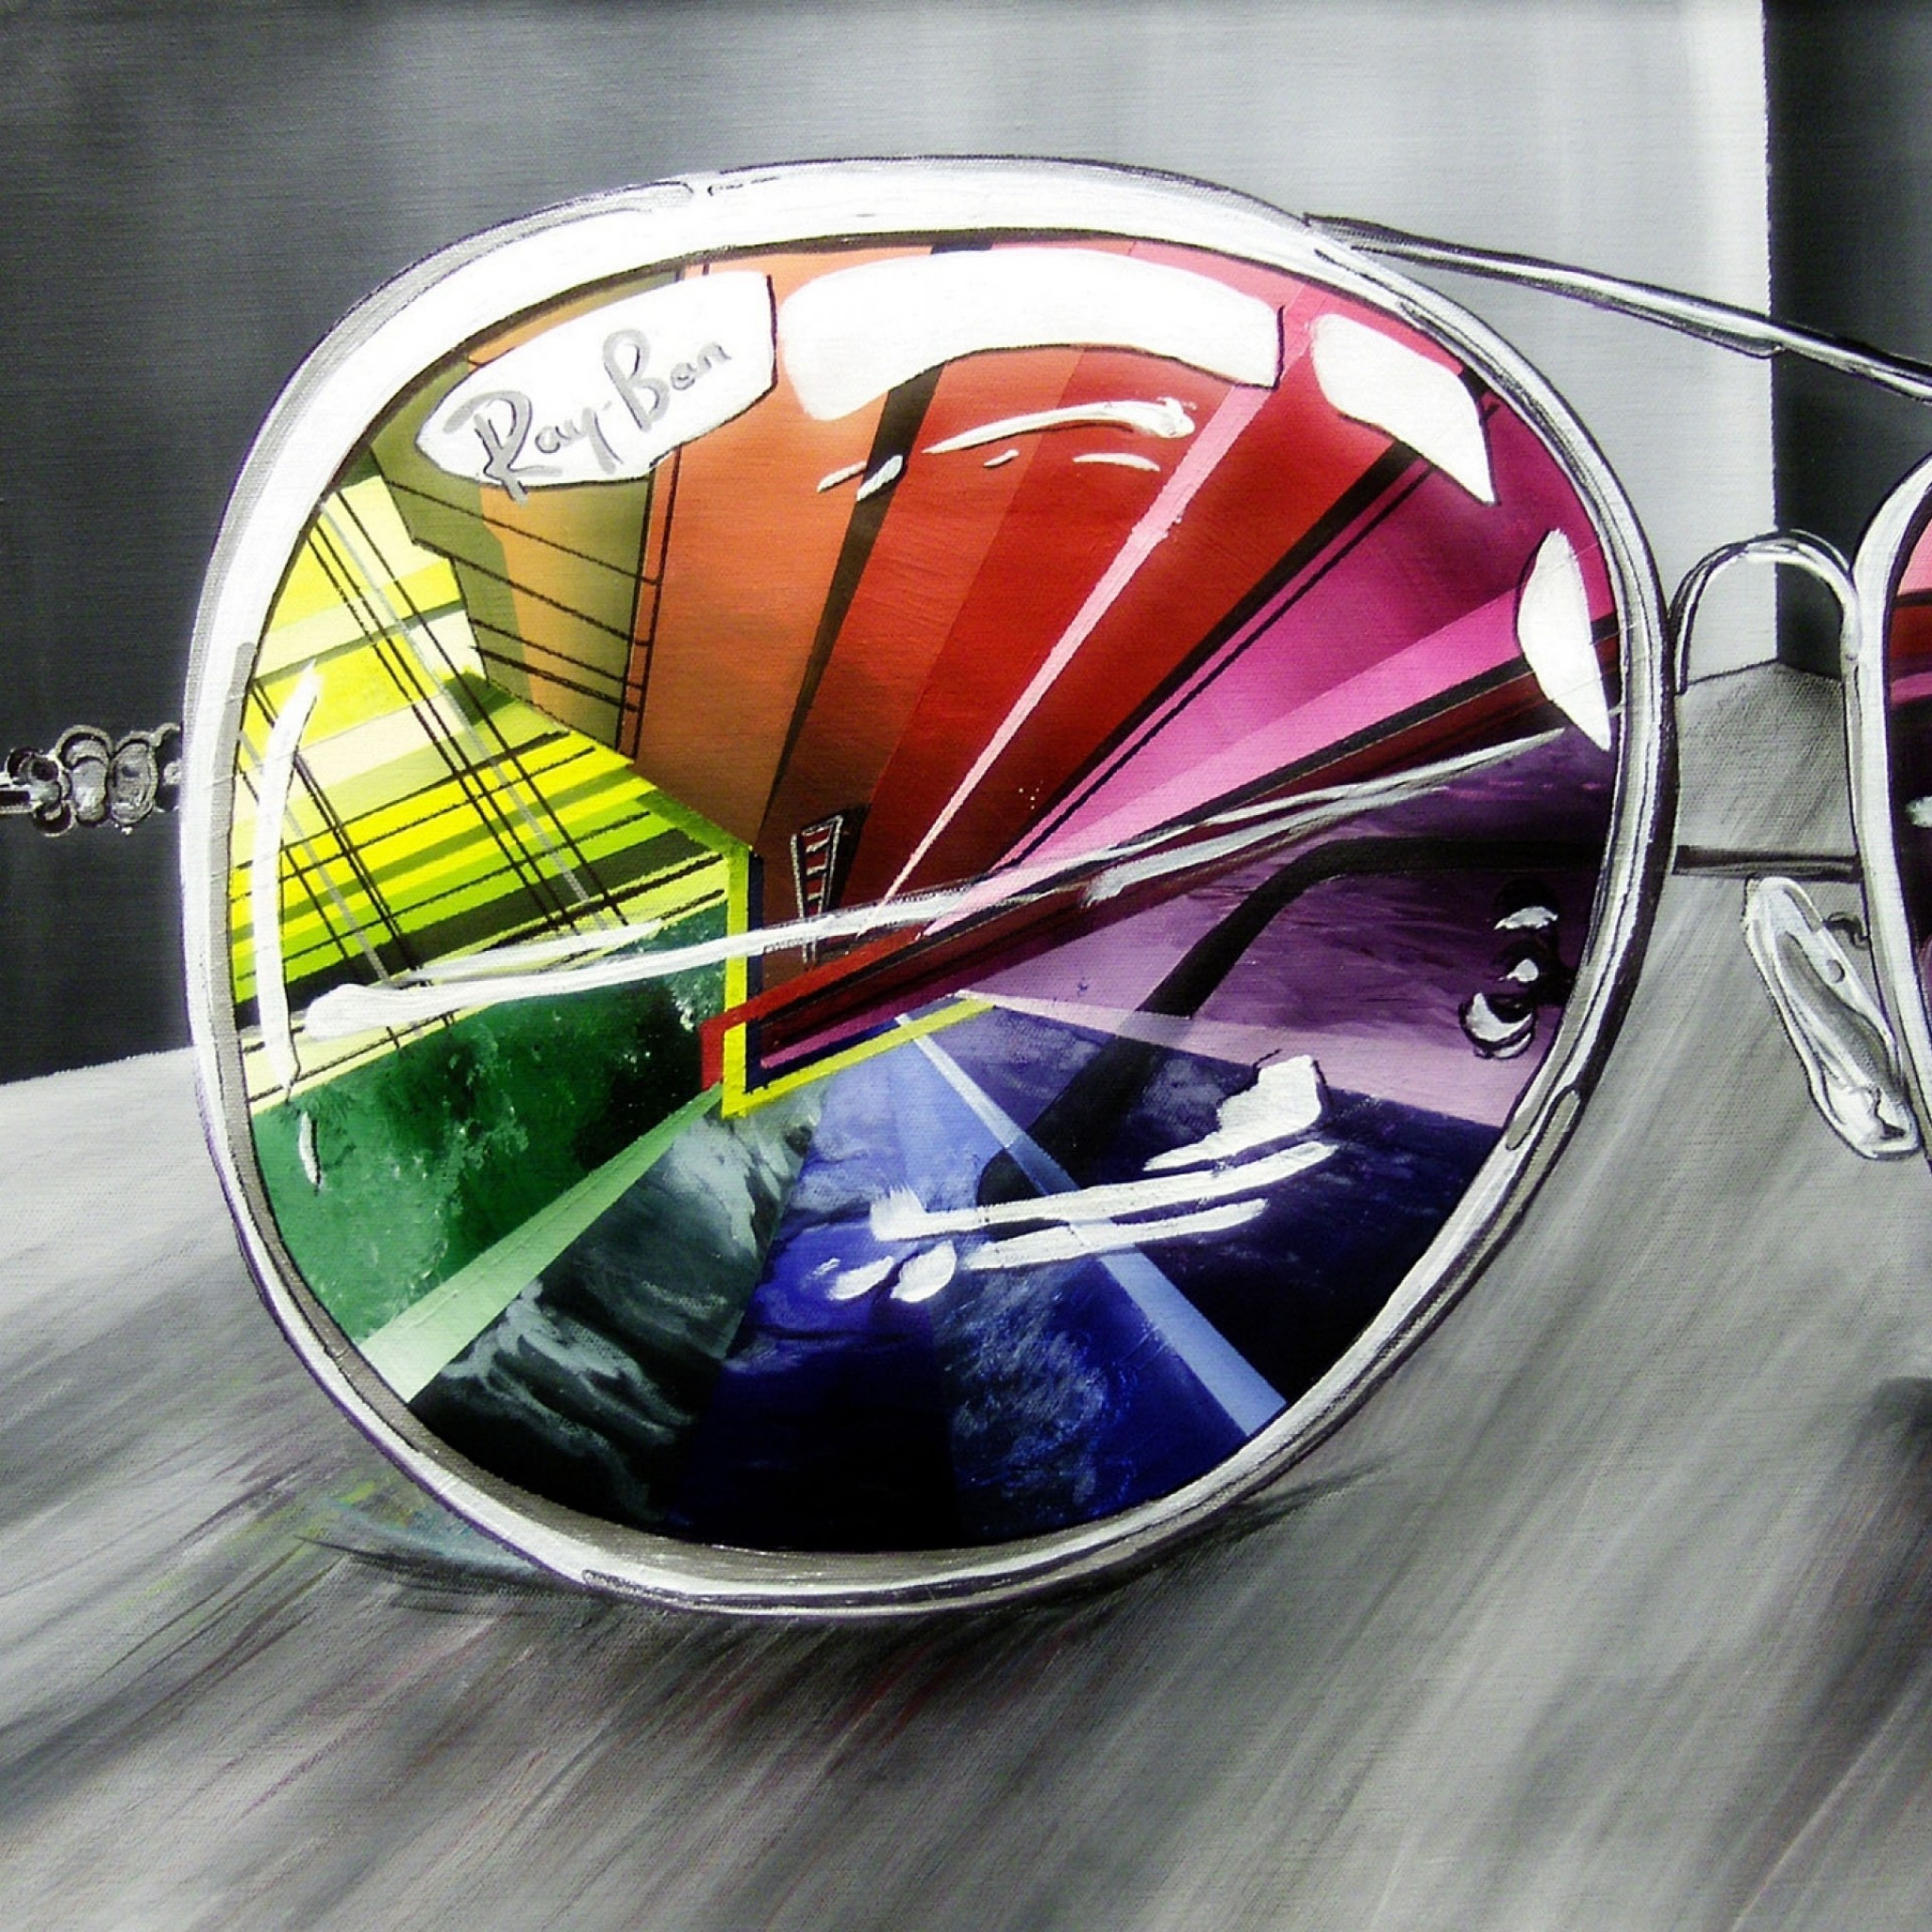 Очки леро. Солнцезащитные очки с отражением. Очки с цветными стеклами. Очки цветные оптические. Отражение в очках.